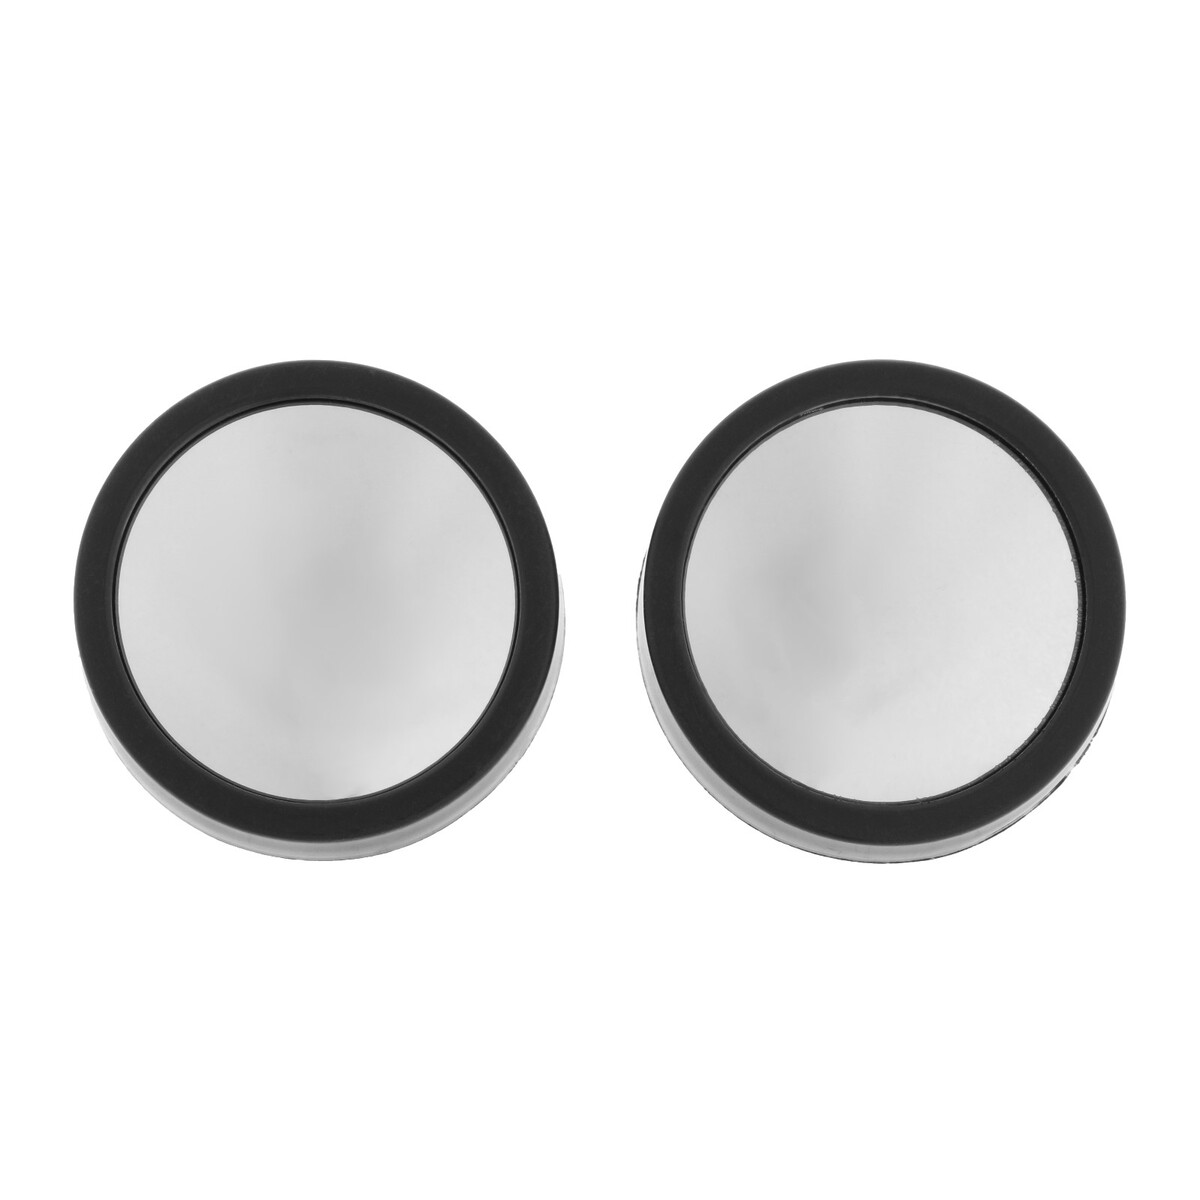 Зеркало сферическое, 50 мм, черный, набор 2 шт No brand 03412849 - фото 1